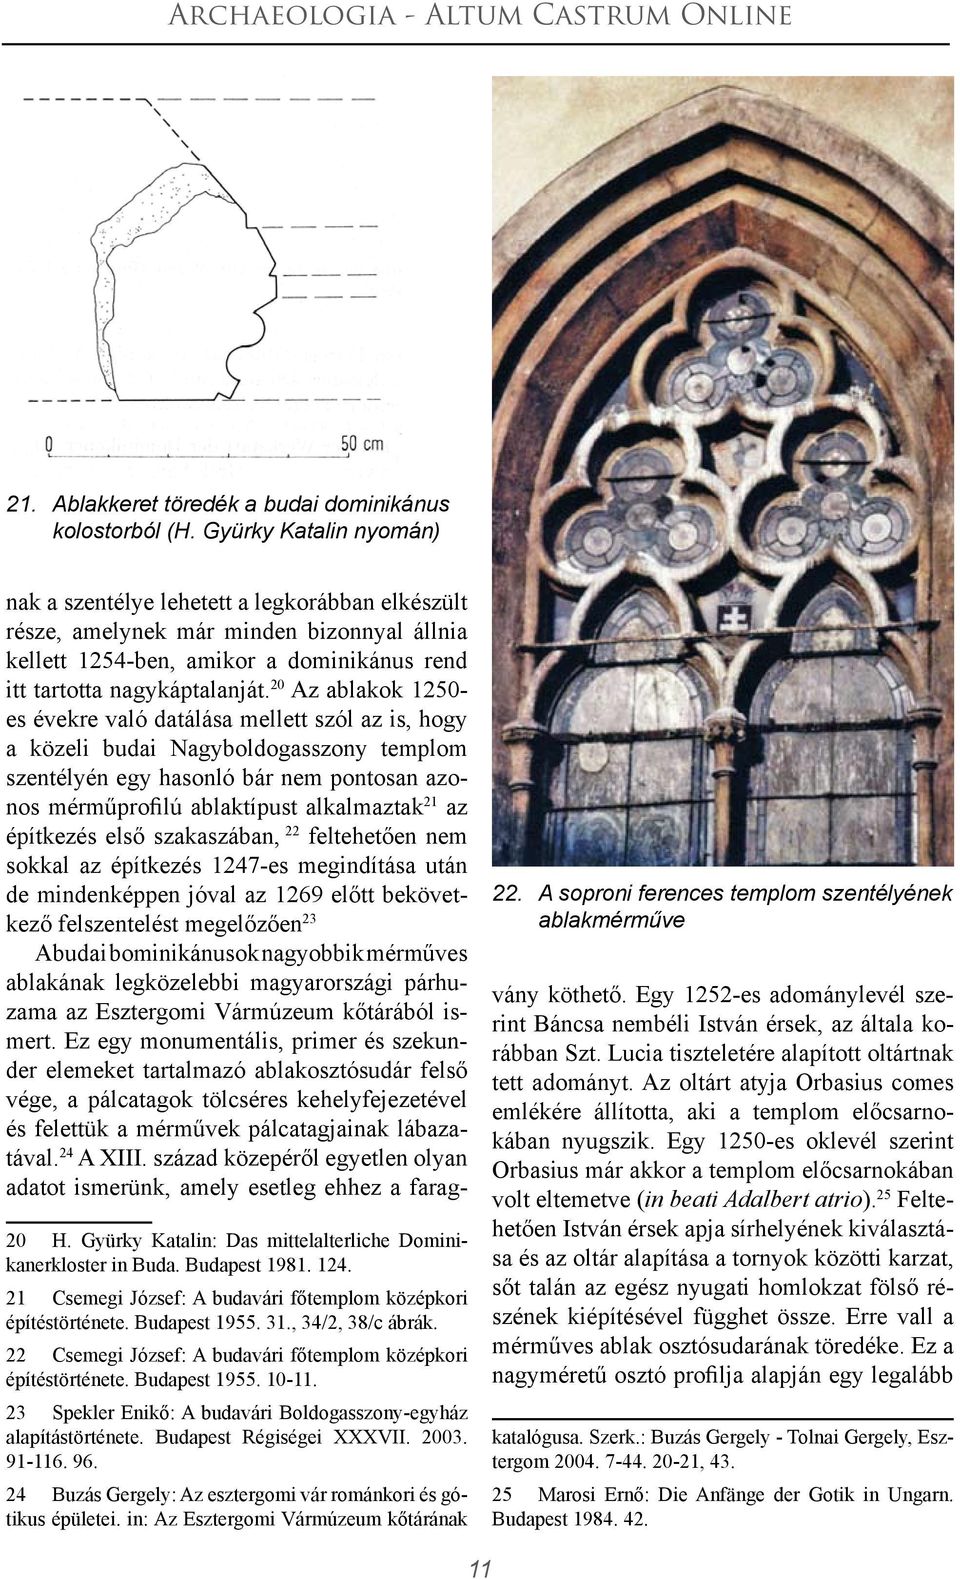 20 Az ablakok 1250- es évekre való datálása mellett szól az is, hogy a közeli budai Nagyboldogasszony templom szentélyén egy hasonló bár nem pontosan azonos mérműprofilú ablaktípust alkalmaztak 21 az